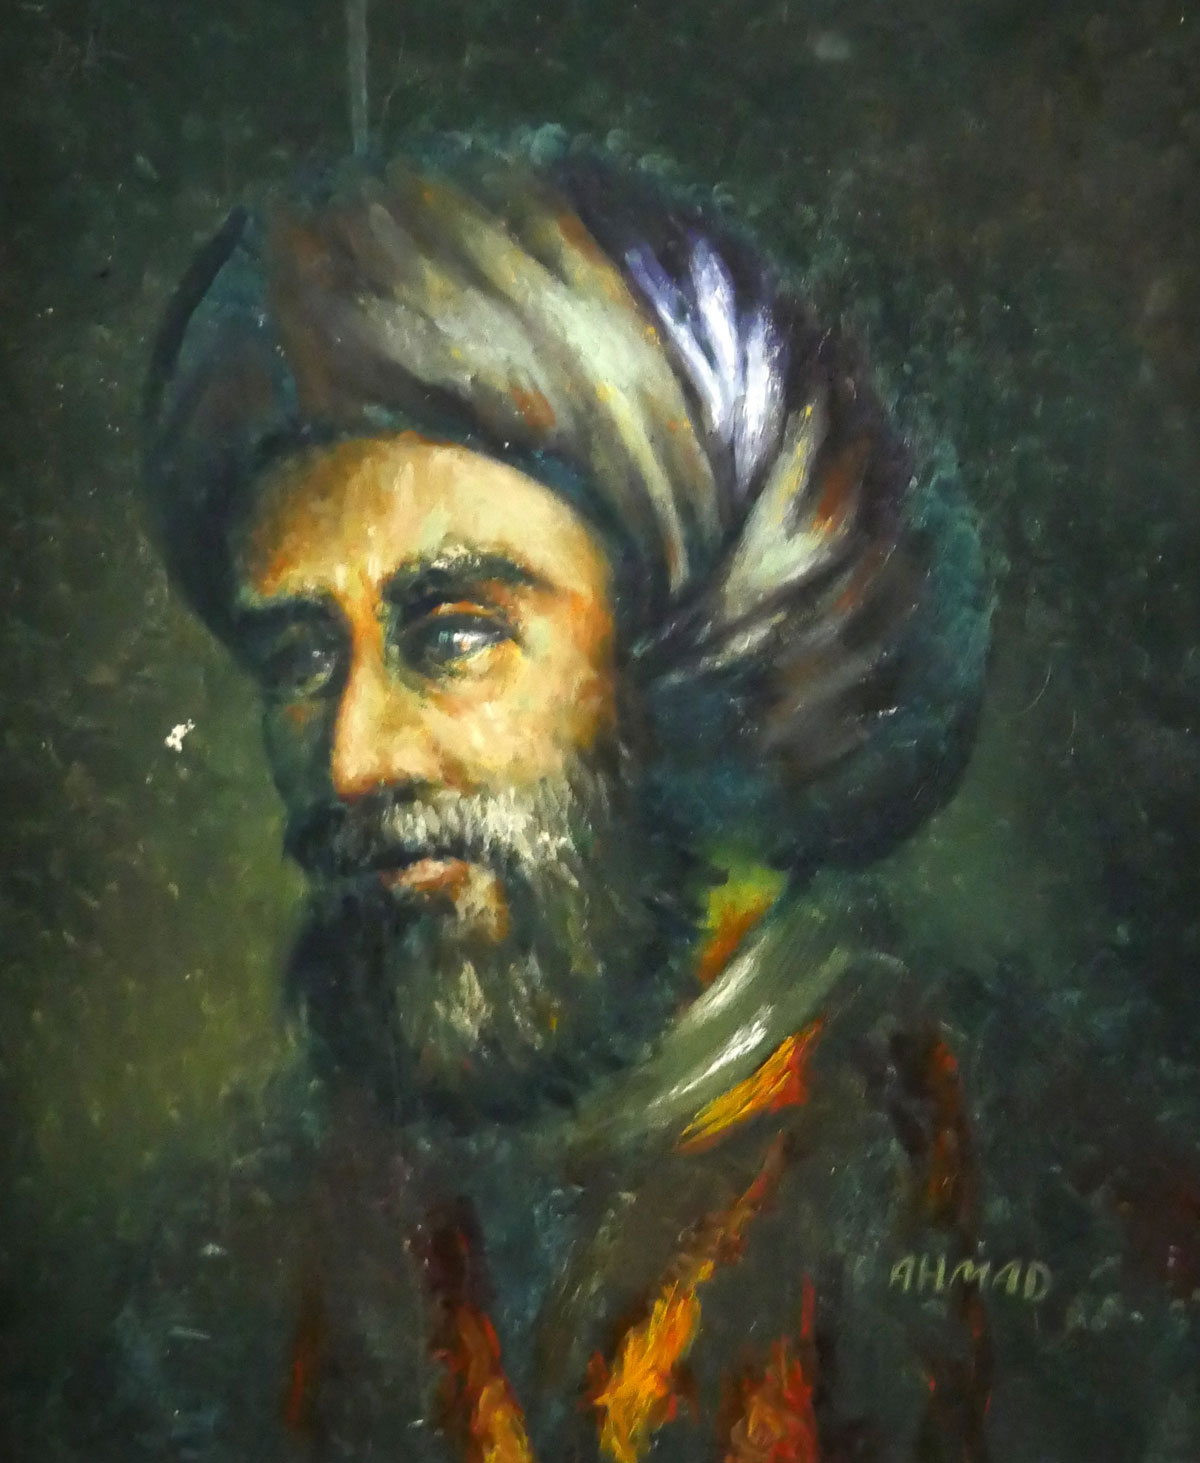 Retrato de Muhammad ibn Musa al-Khwarizmi (latinizado como Algorithmi), um estudioso persa que produziu trabalhos em matemática, astronomia e geografia.